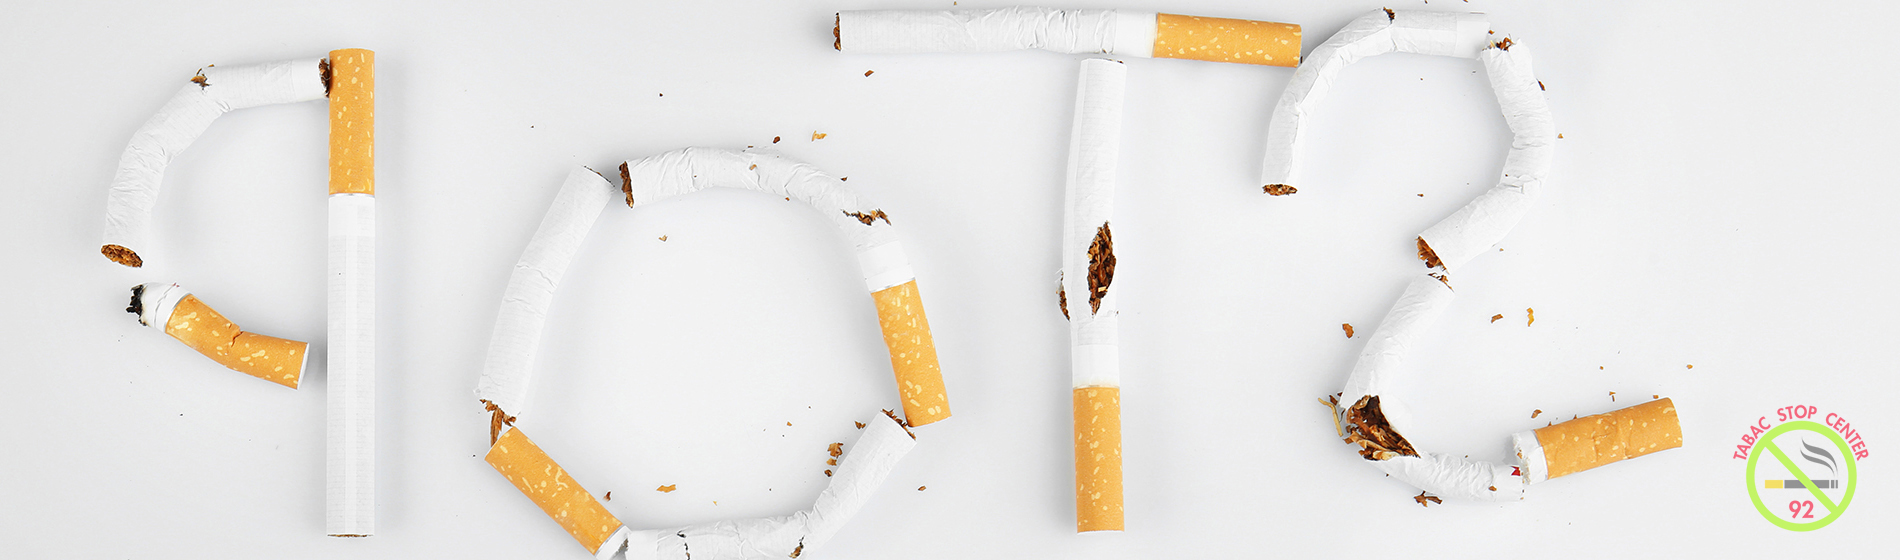 efficacité aimant anti tabac avis Paray-Vieille-Poste (91550)